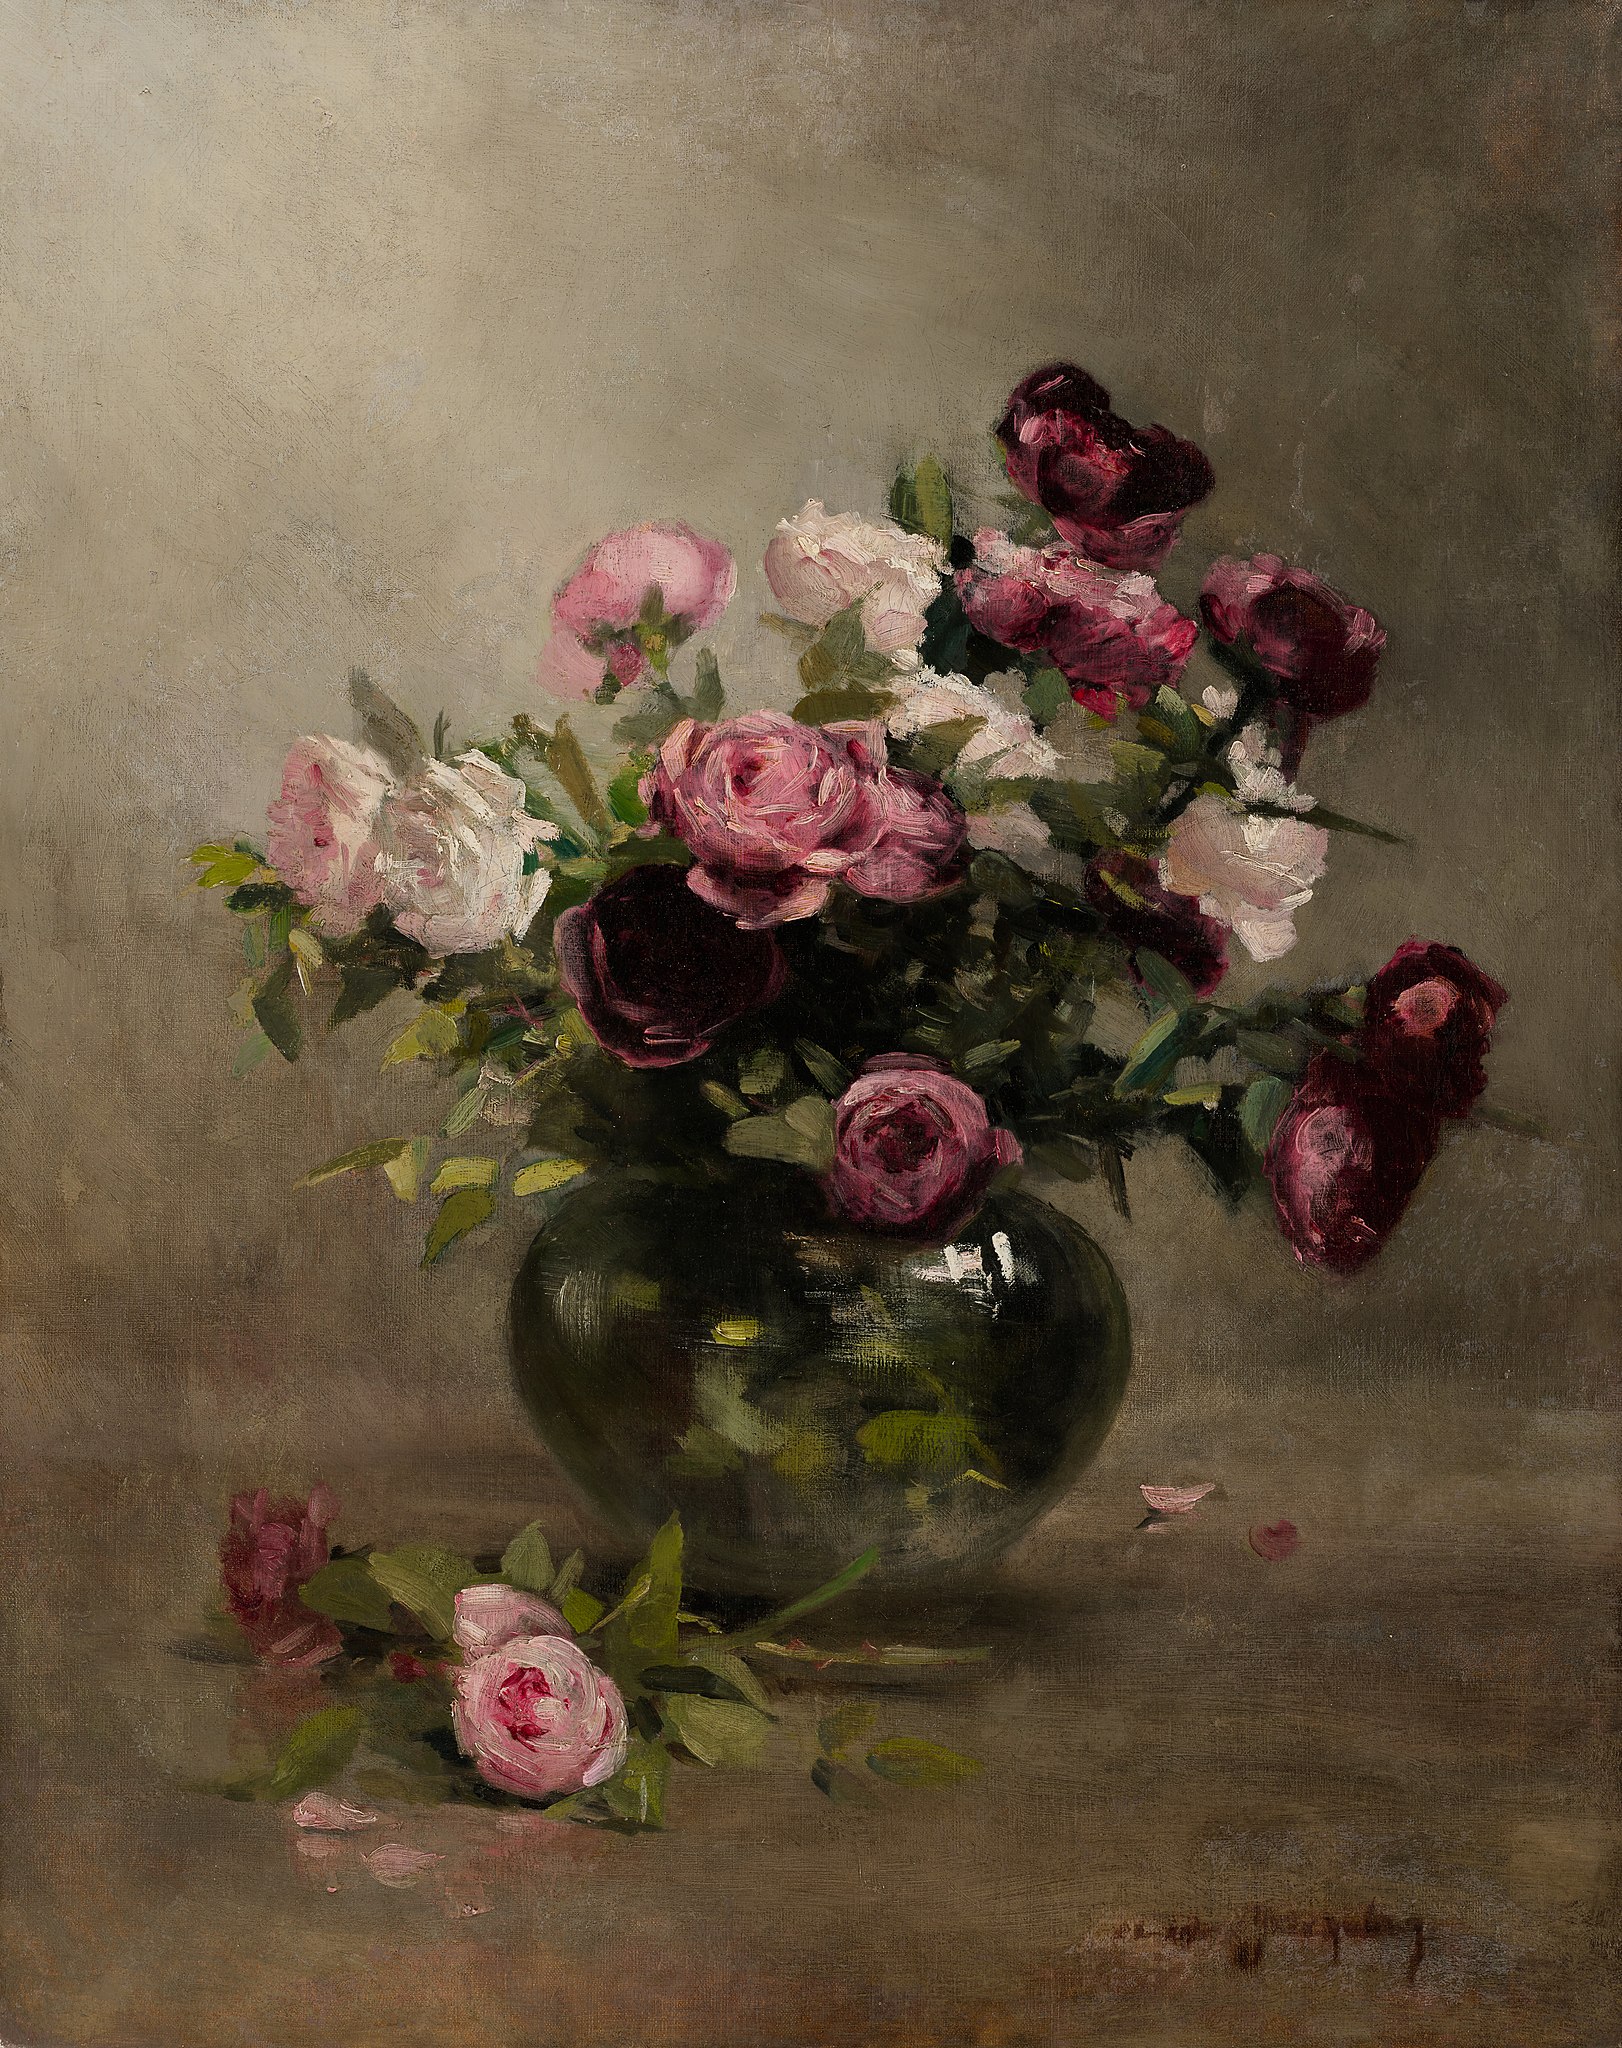 Vase de roses by Eva Gonzalès - Début des années 1870 - 79,85 × 63,34 cm Minneapolis Institute of Art